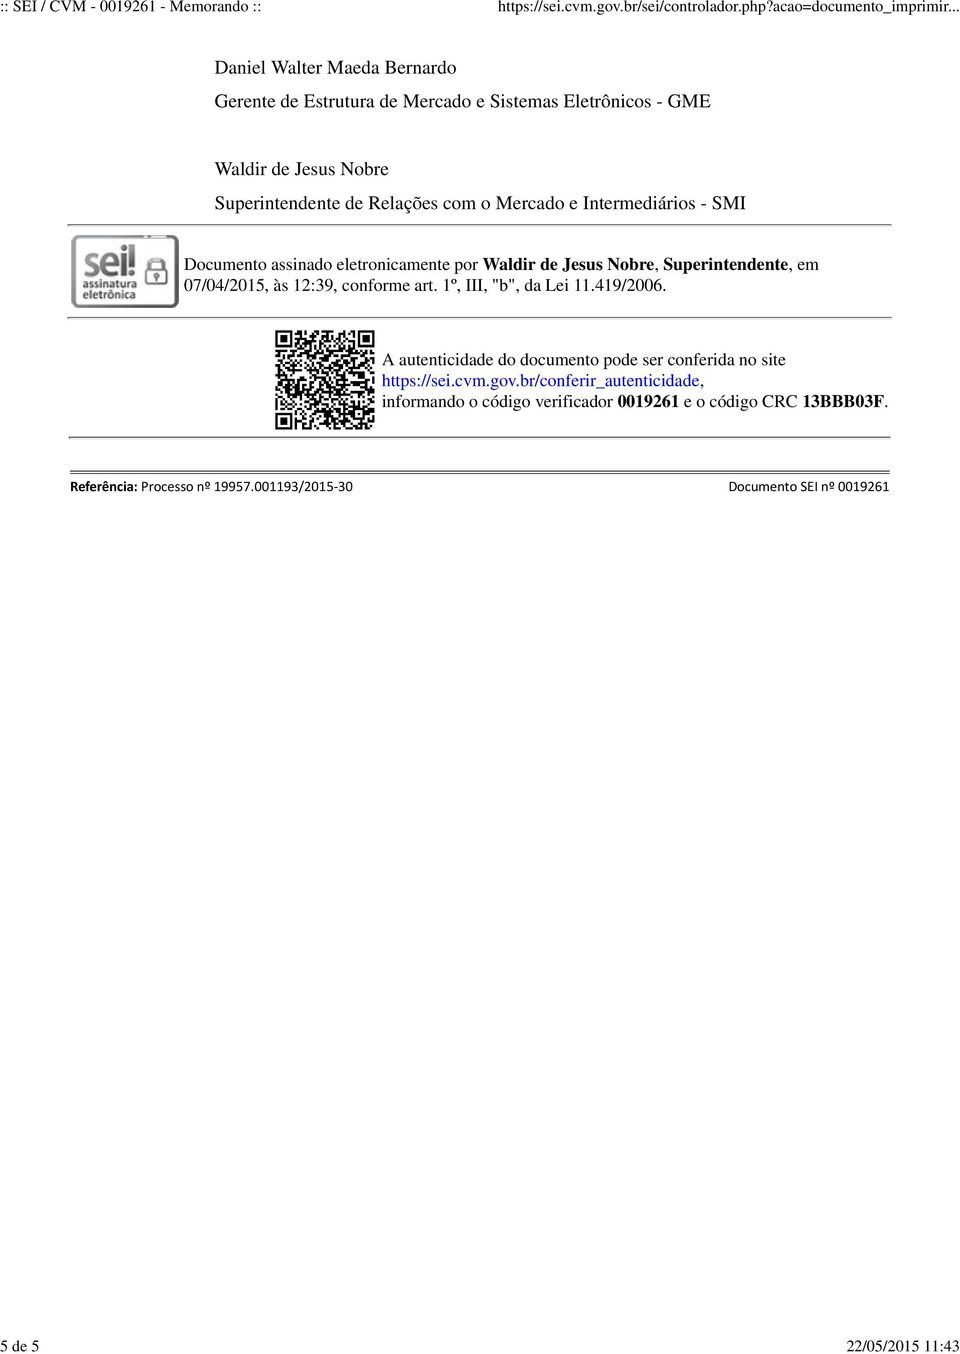 Intermediários - SMI Documento assinado eletronicamente por Waldir de Jesus Nobre, Superintendente, em 07/04/2015, às 12:39, conforme art. 1º, III, "b", da Lei 11.